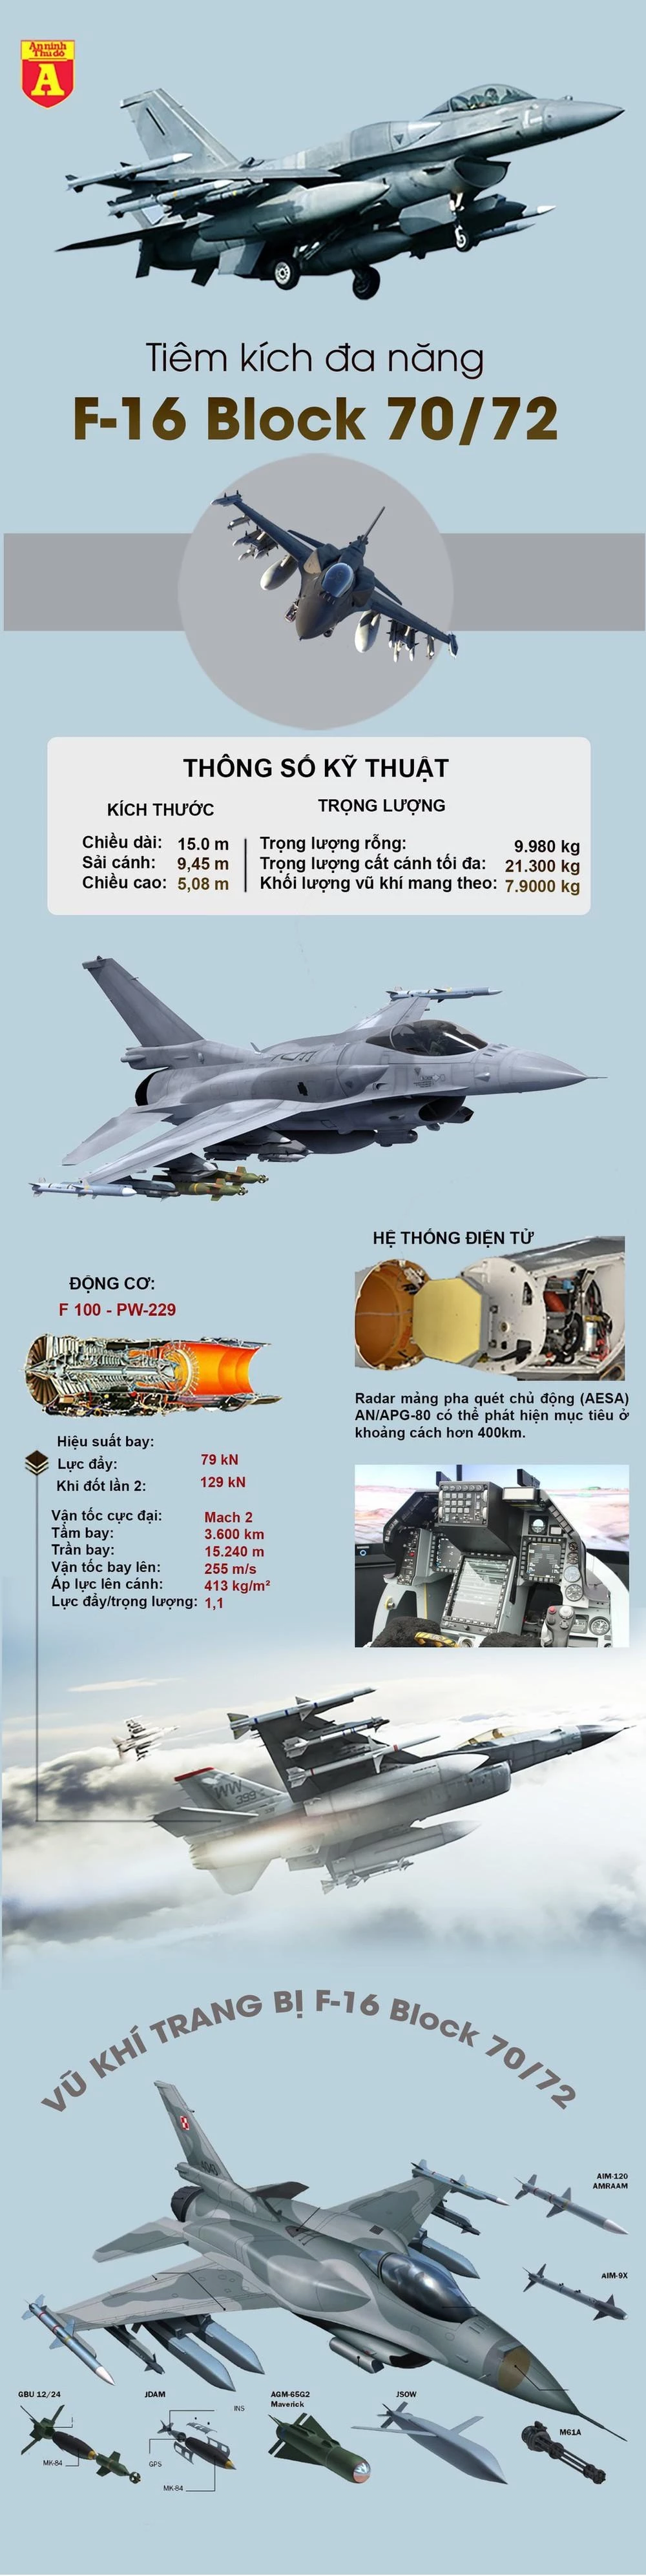 [Info] F-16 Block 70/72 đối thủ đáng gờm của Su-35 Nga ảnh 2